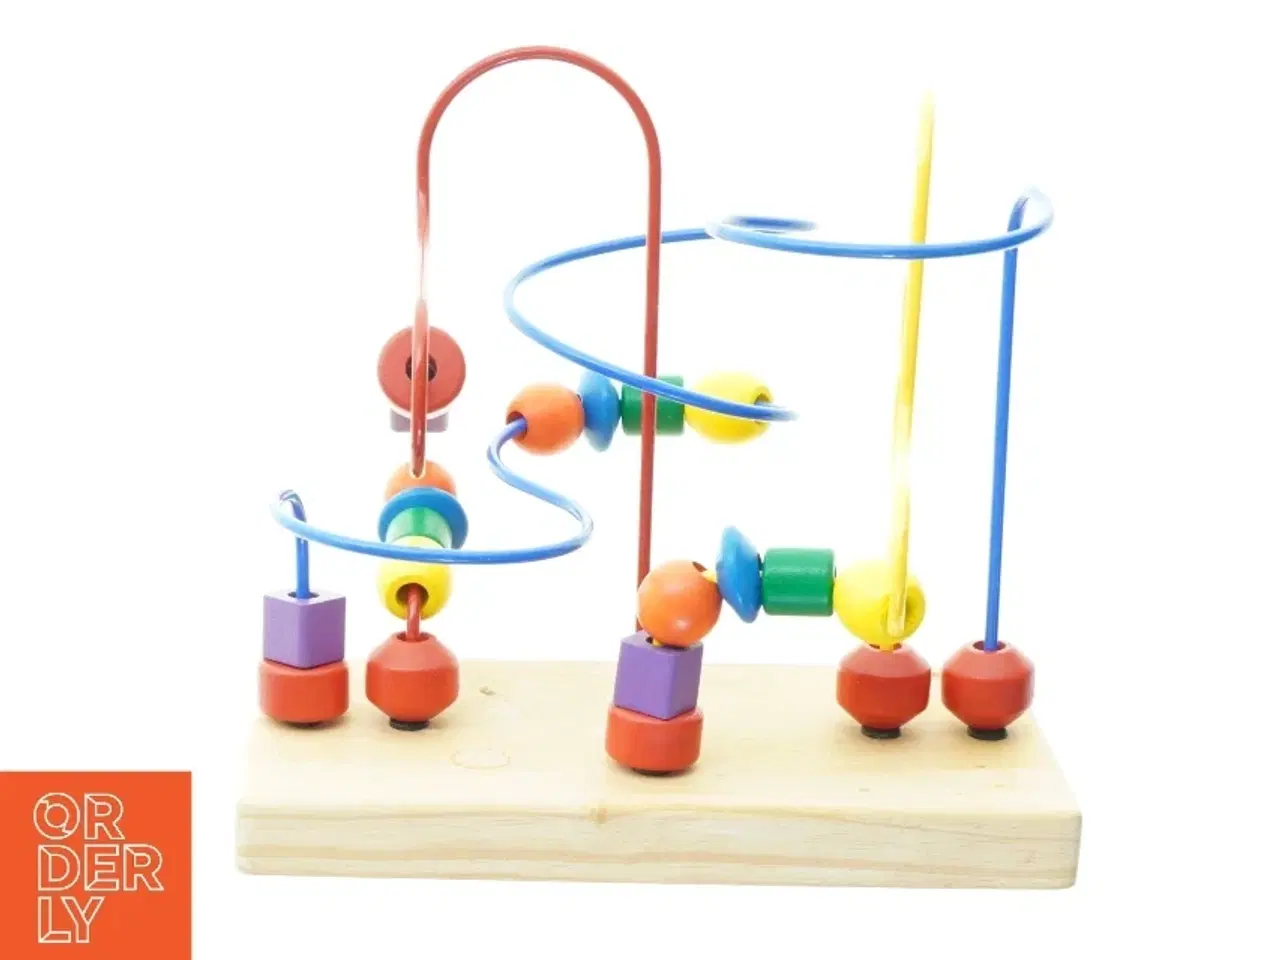 Billede 4 - Aktivitetslegetøj til småbørn fra Kids-wood (str. 30 x 15 cm)